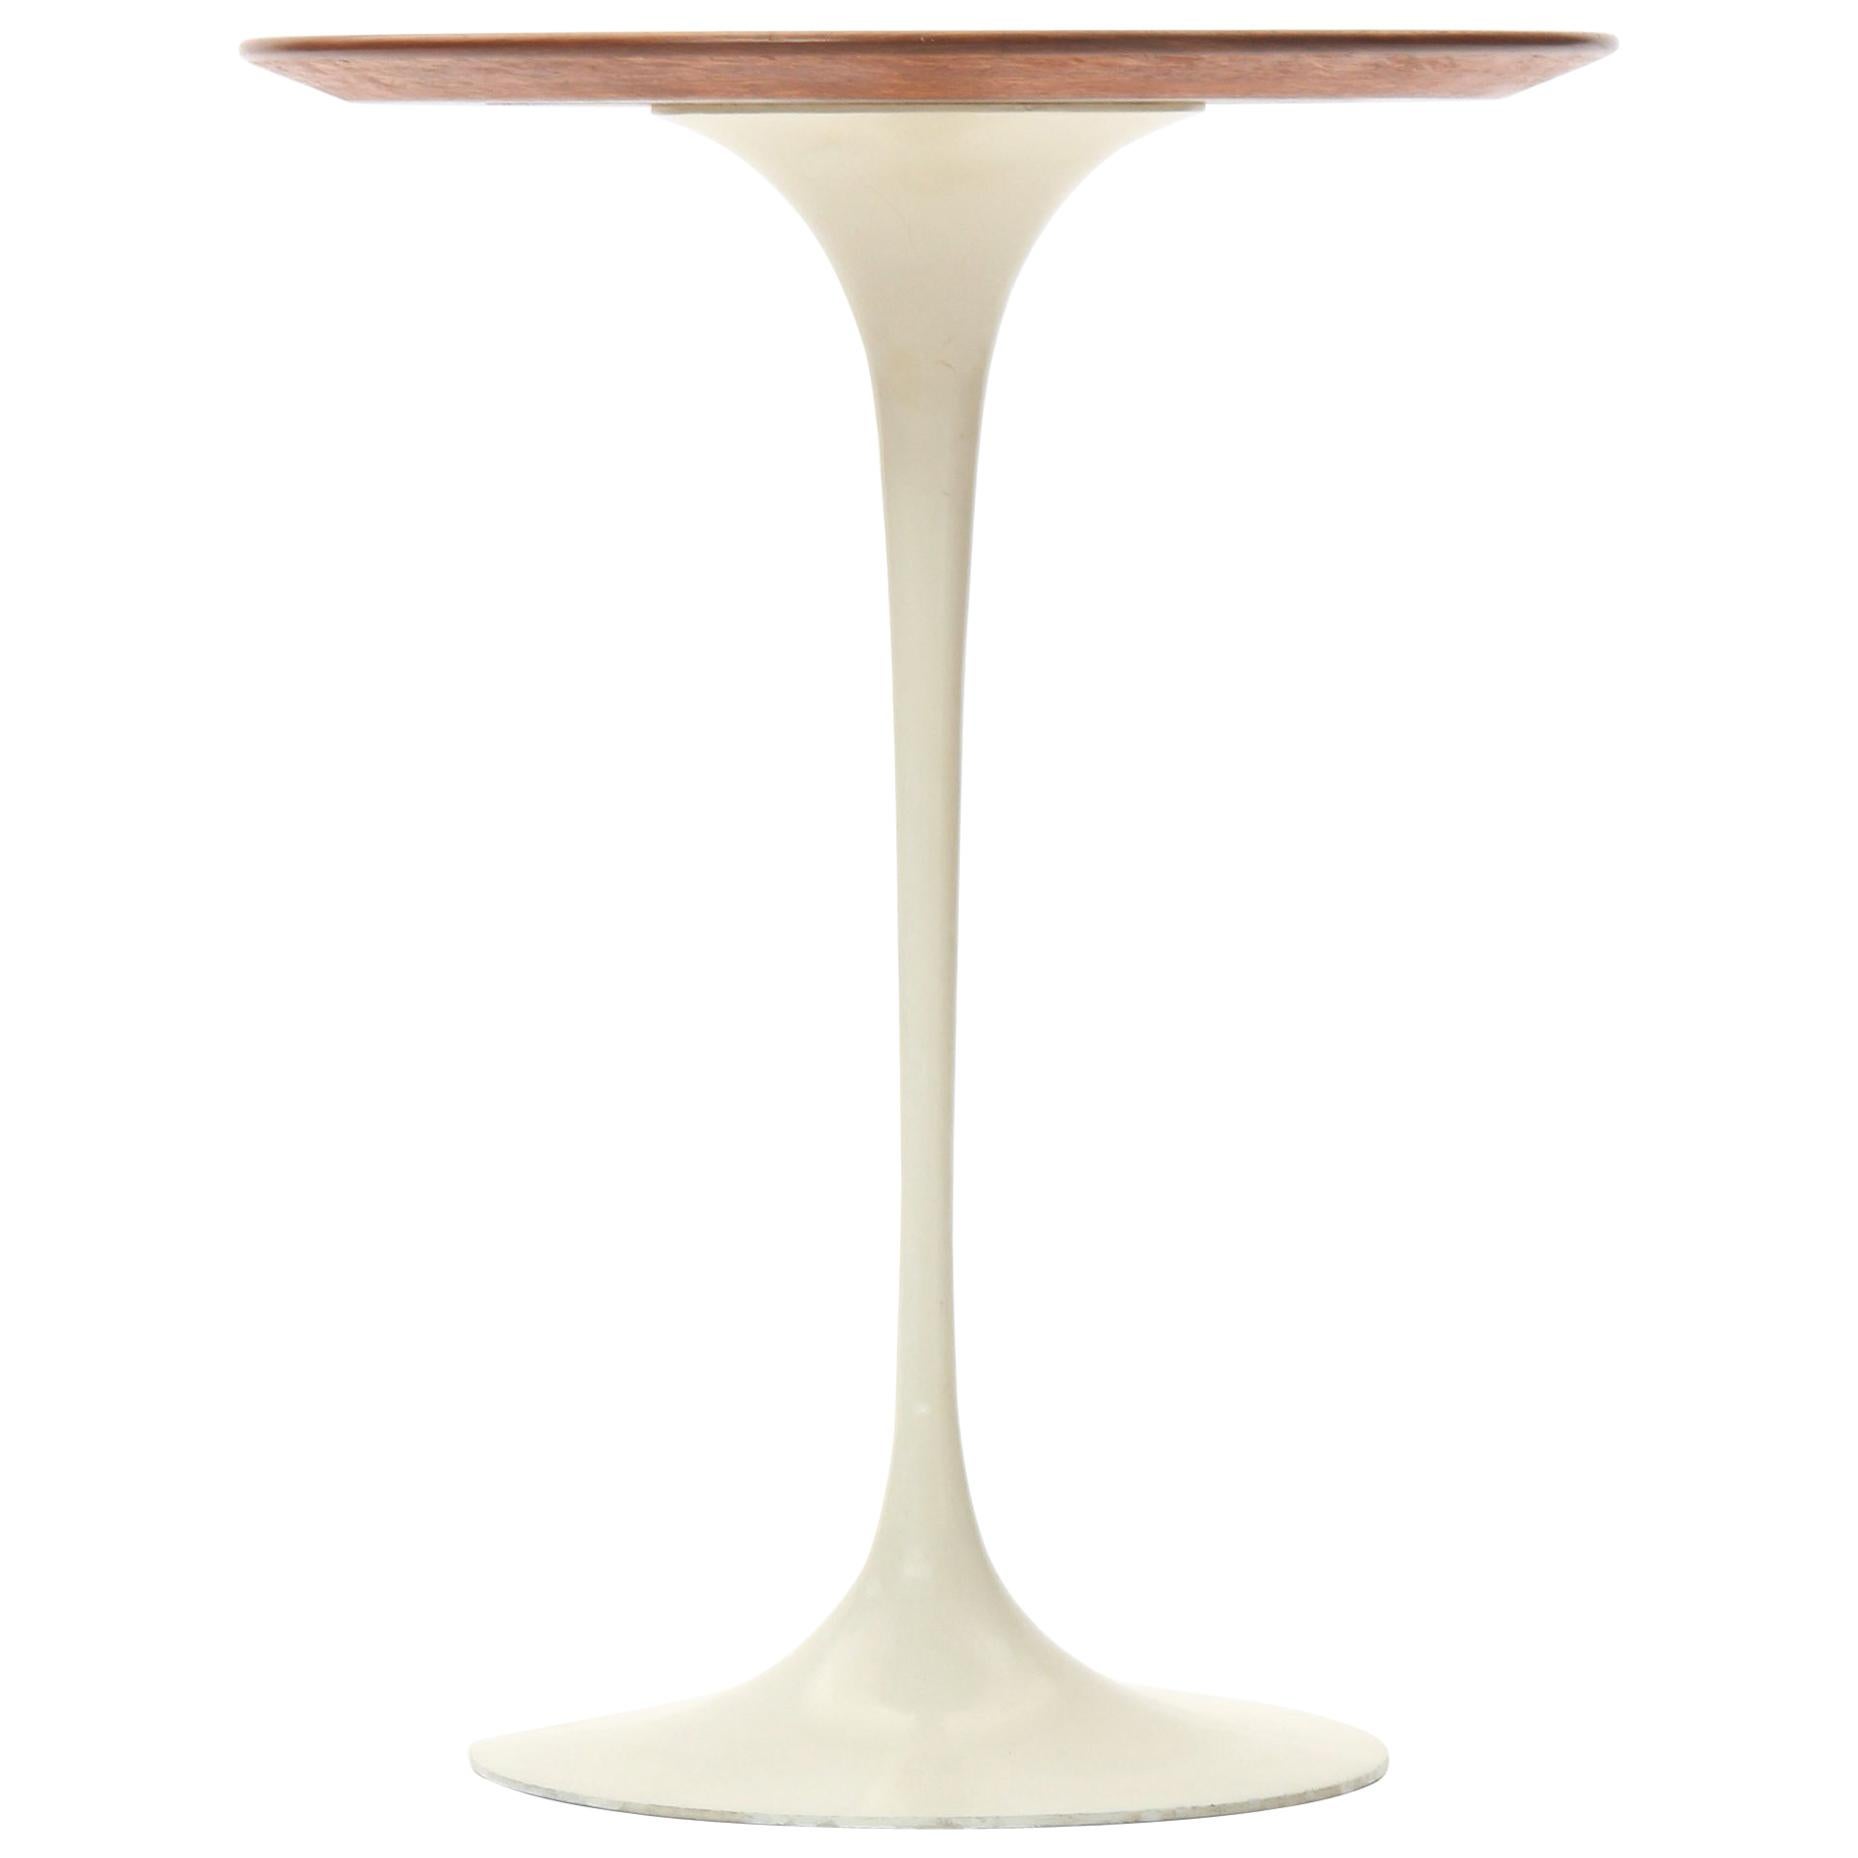 Pedestal Side Table by Eero Saarinen